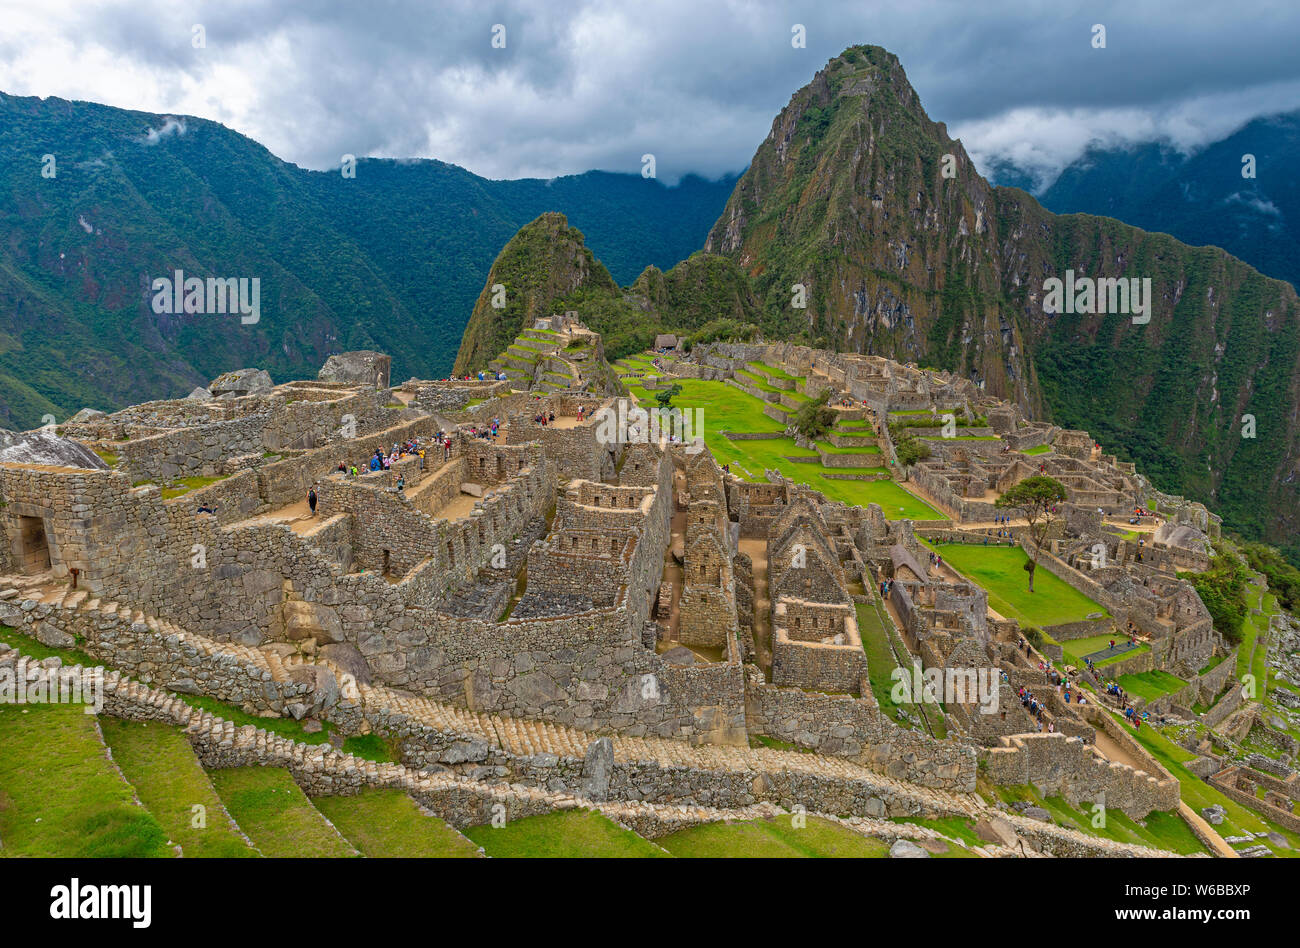 Paysage de la ruine Inca, Machu Picchu, dans les premières étapes de la saison des pluies, Cusco, Pérou province. Banque D'Images